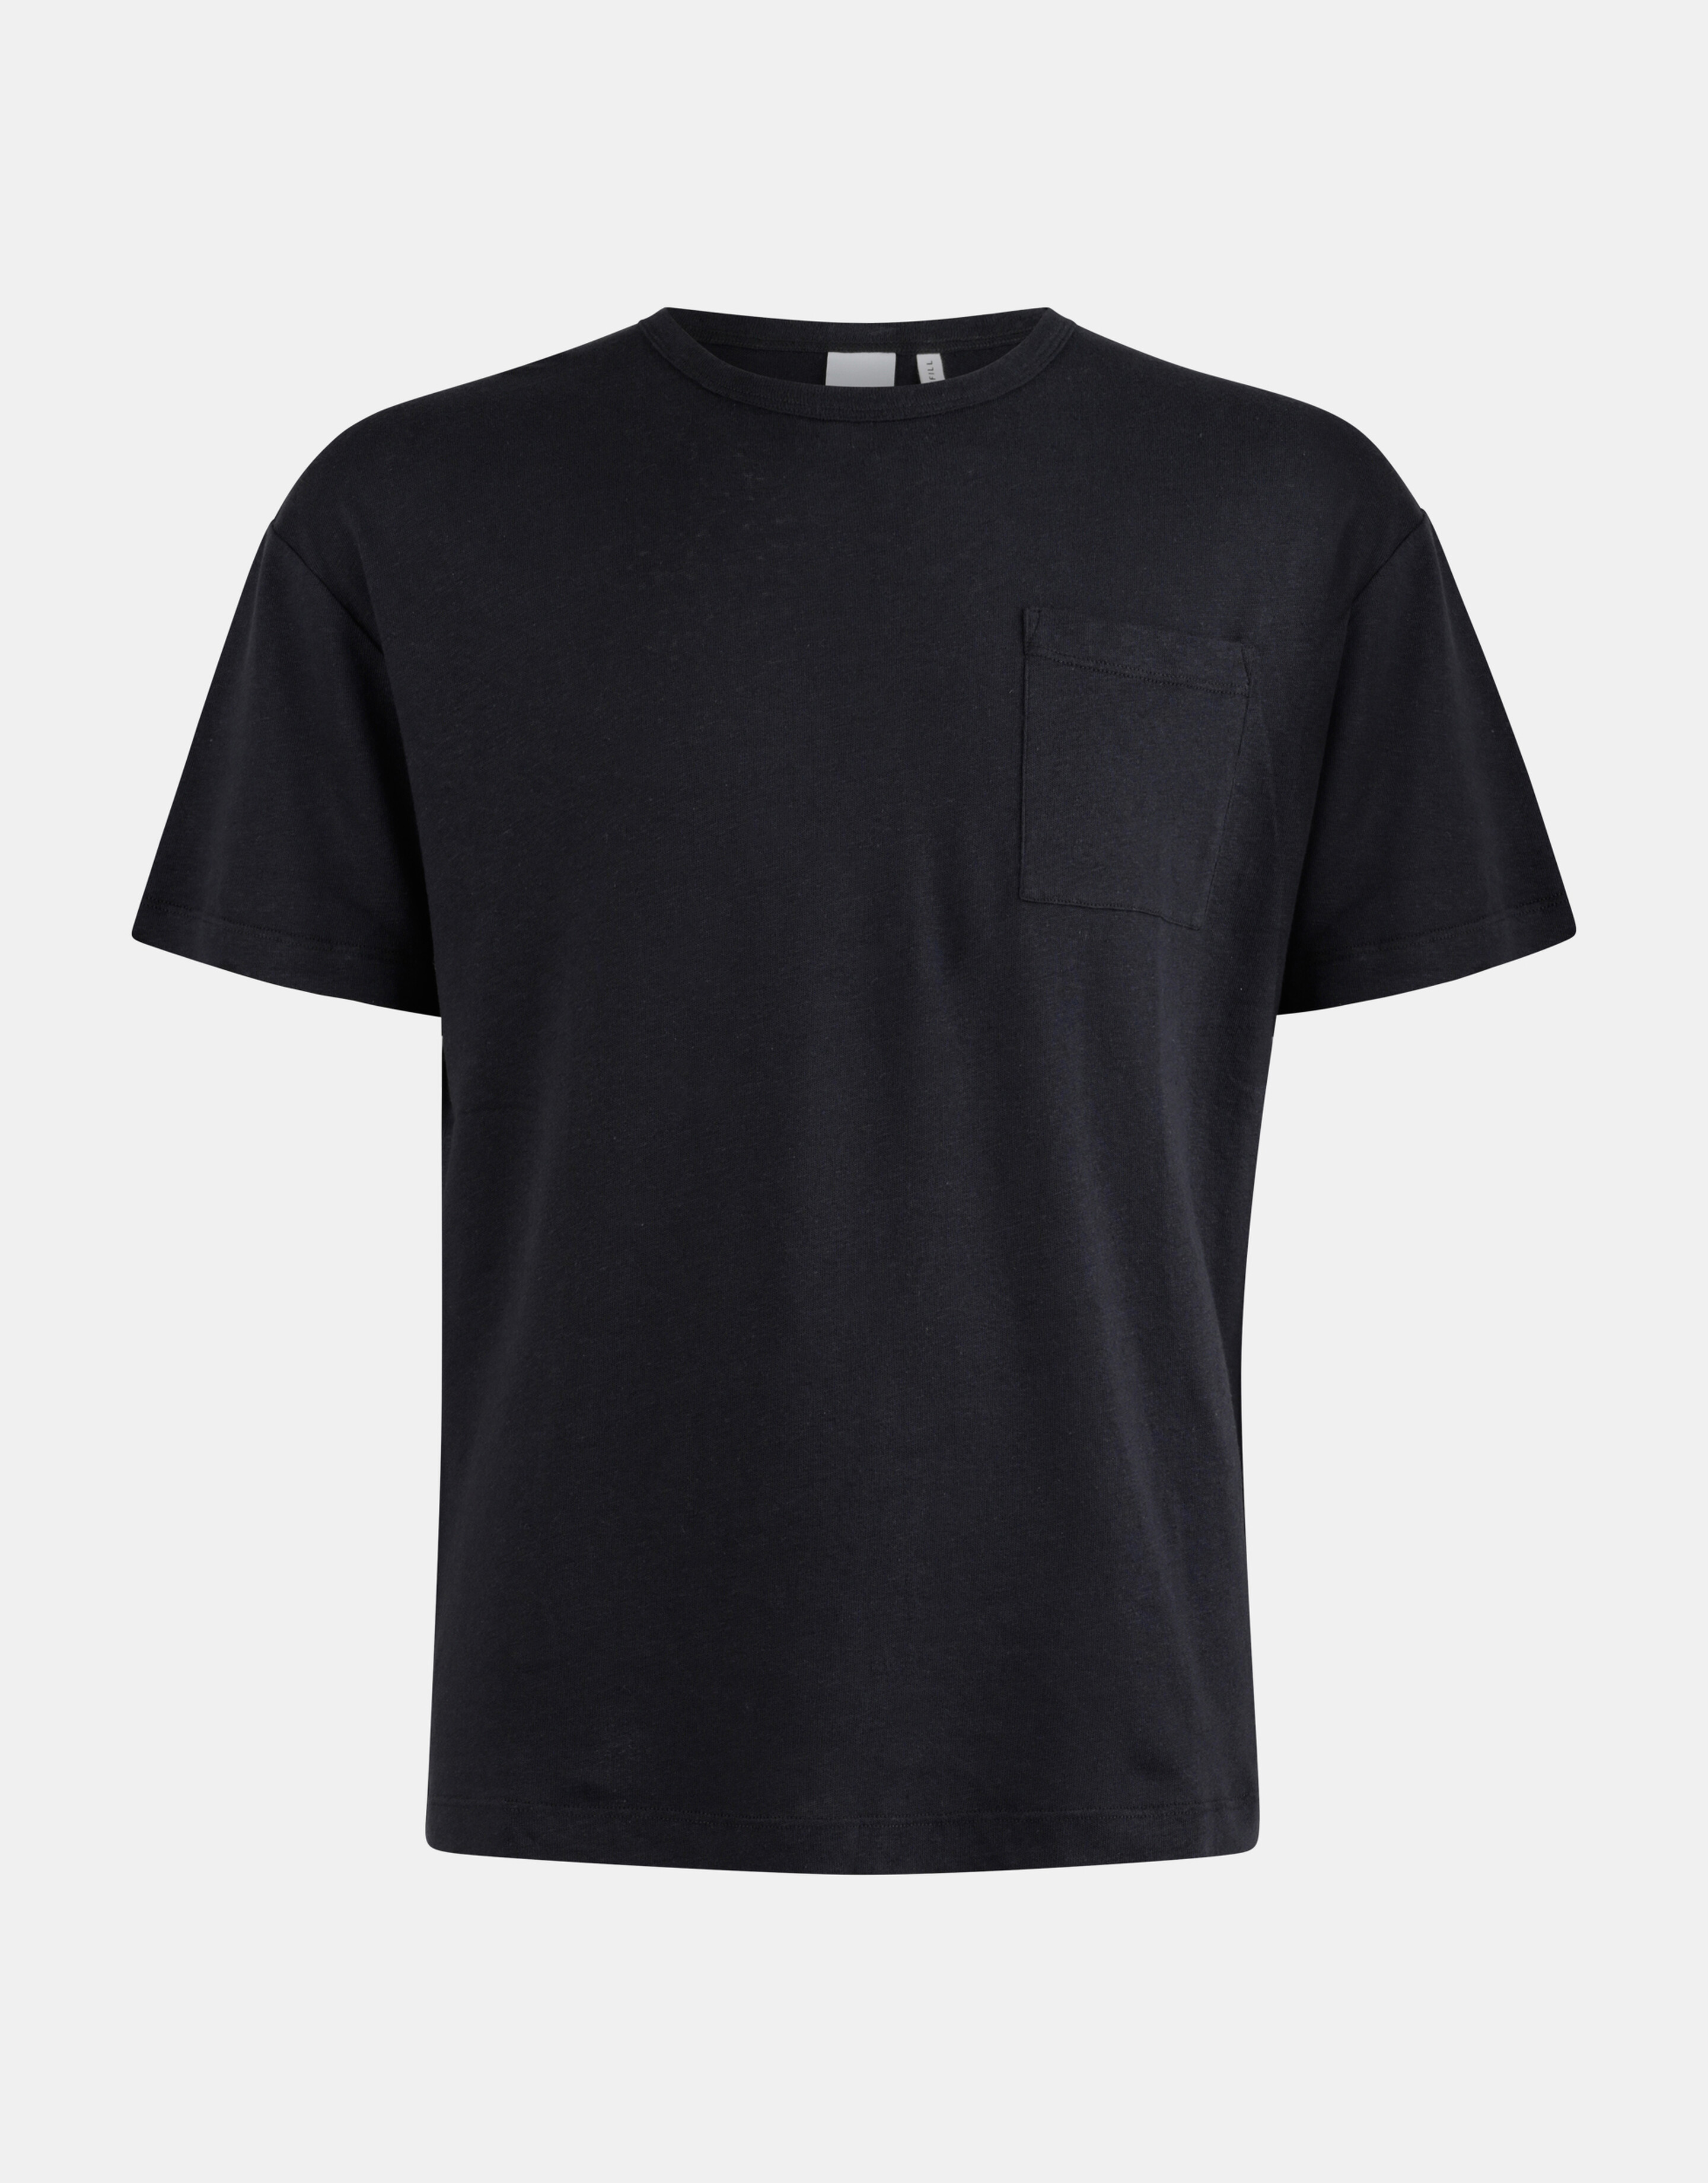 Linnen T-shirt REFILL